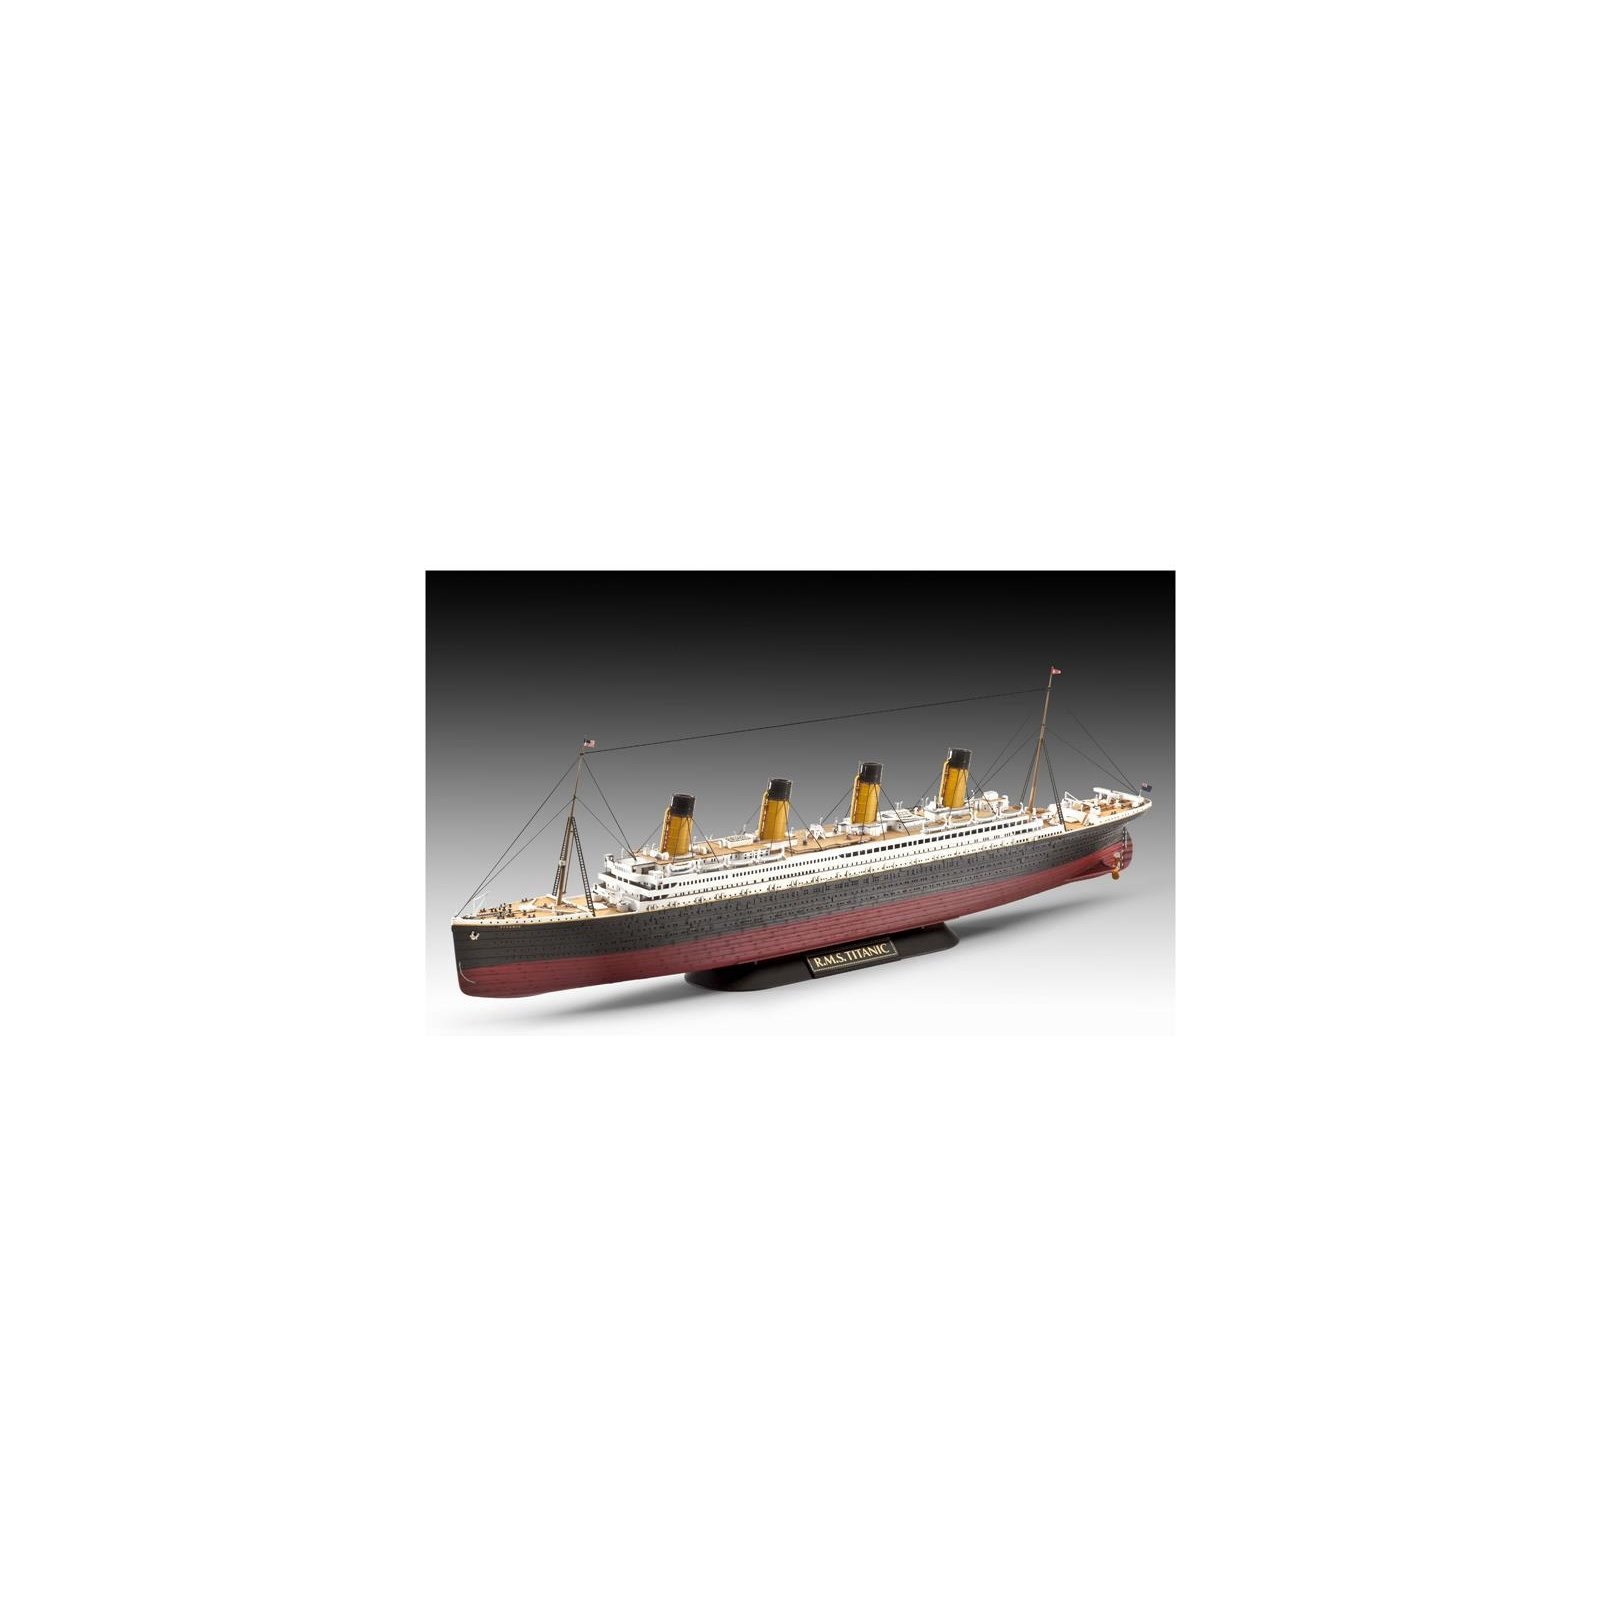 Сборная модель Revell Корабль Титаник подарочный набор уровень 4 1:700 и 1:1200 уровень 4 1:700 и 1:1200 (RVL-05727) изображение 7